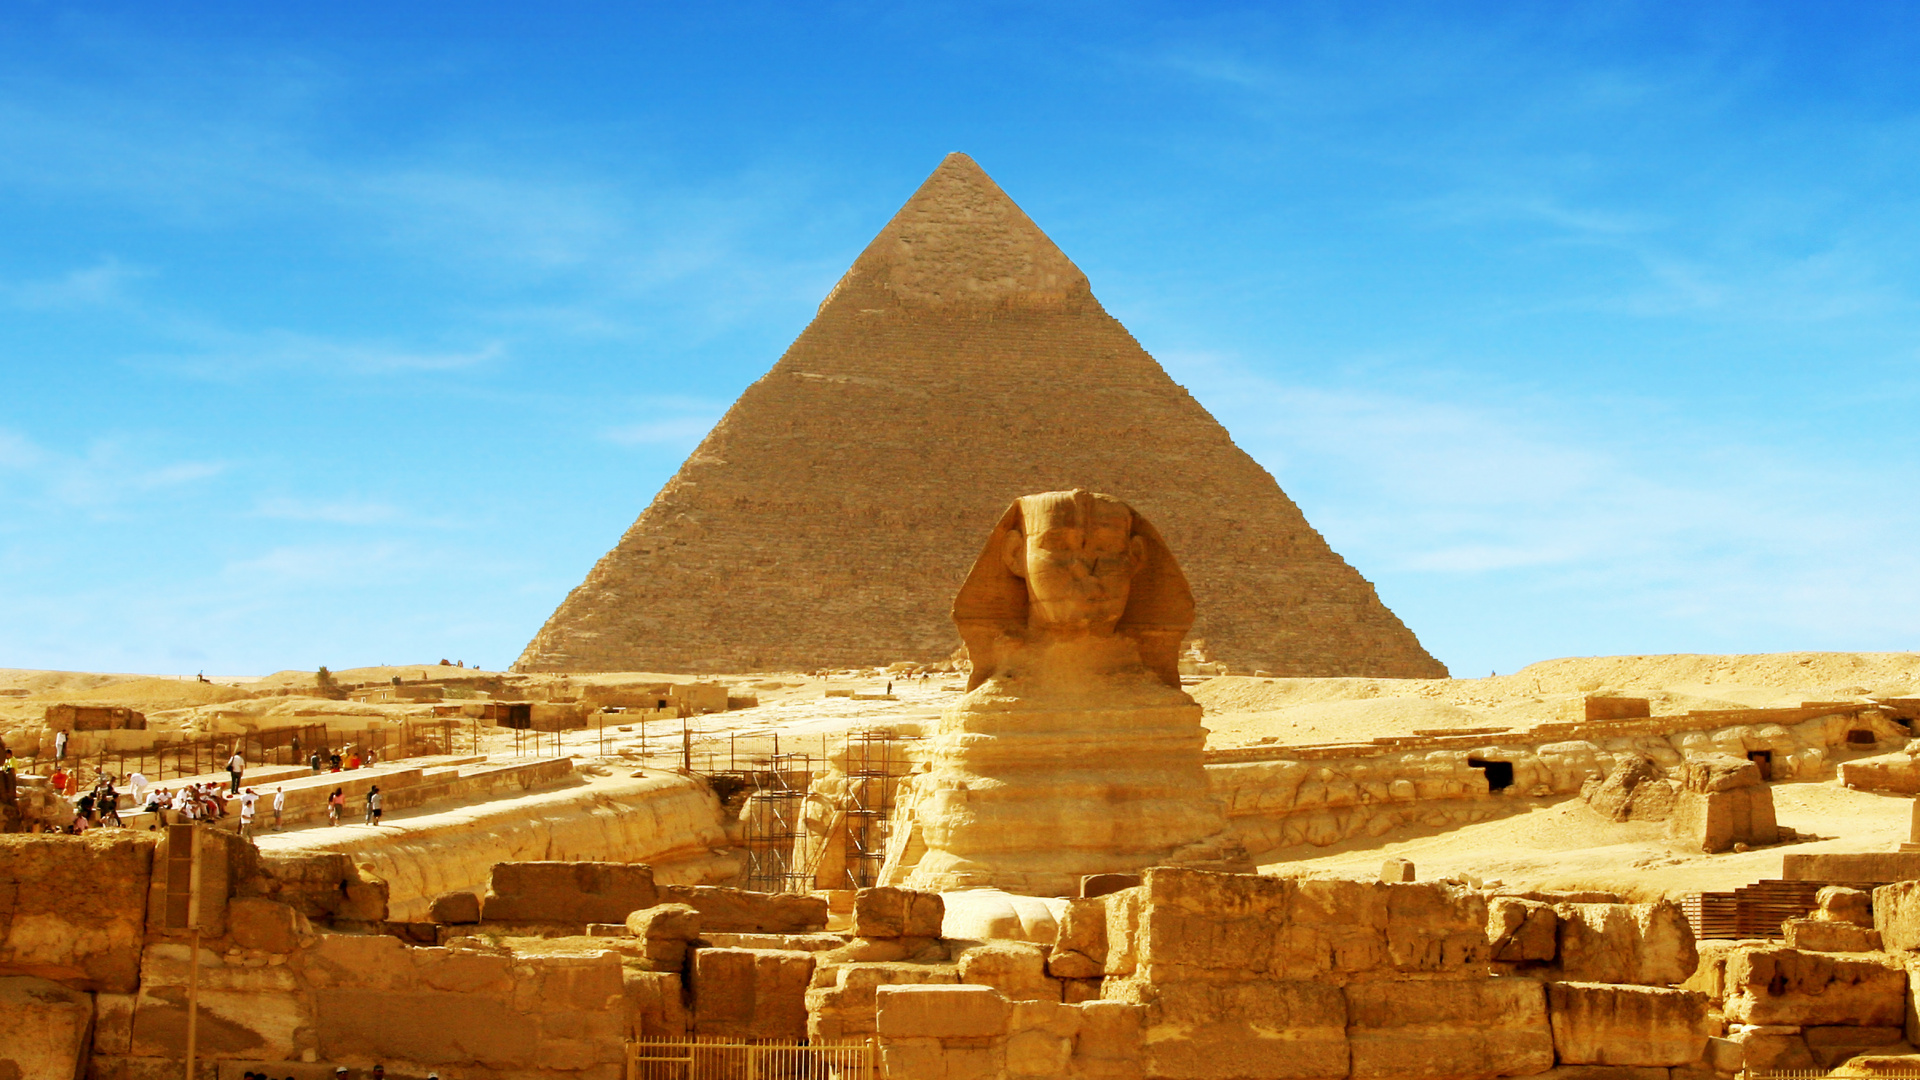 吉萨的大狮身人面像, 金字塔, 古代历史, 历史站, 里程碑 壁纸 1920x1080 允许